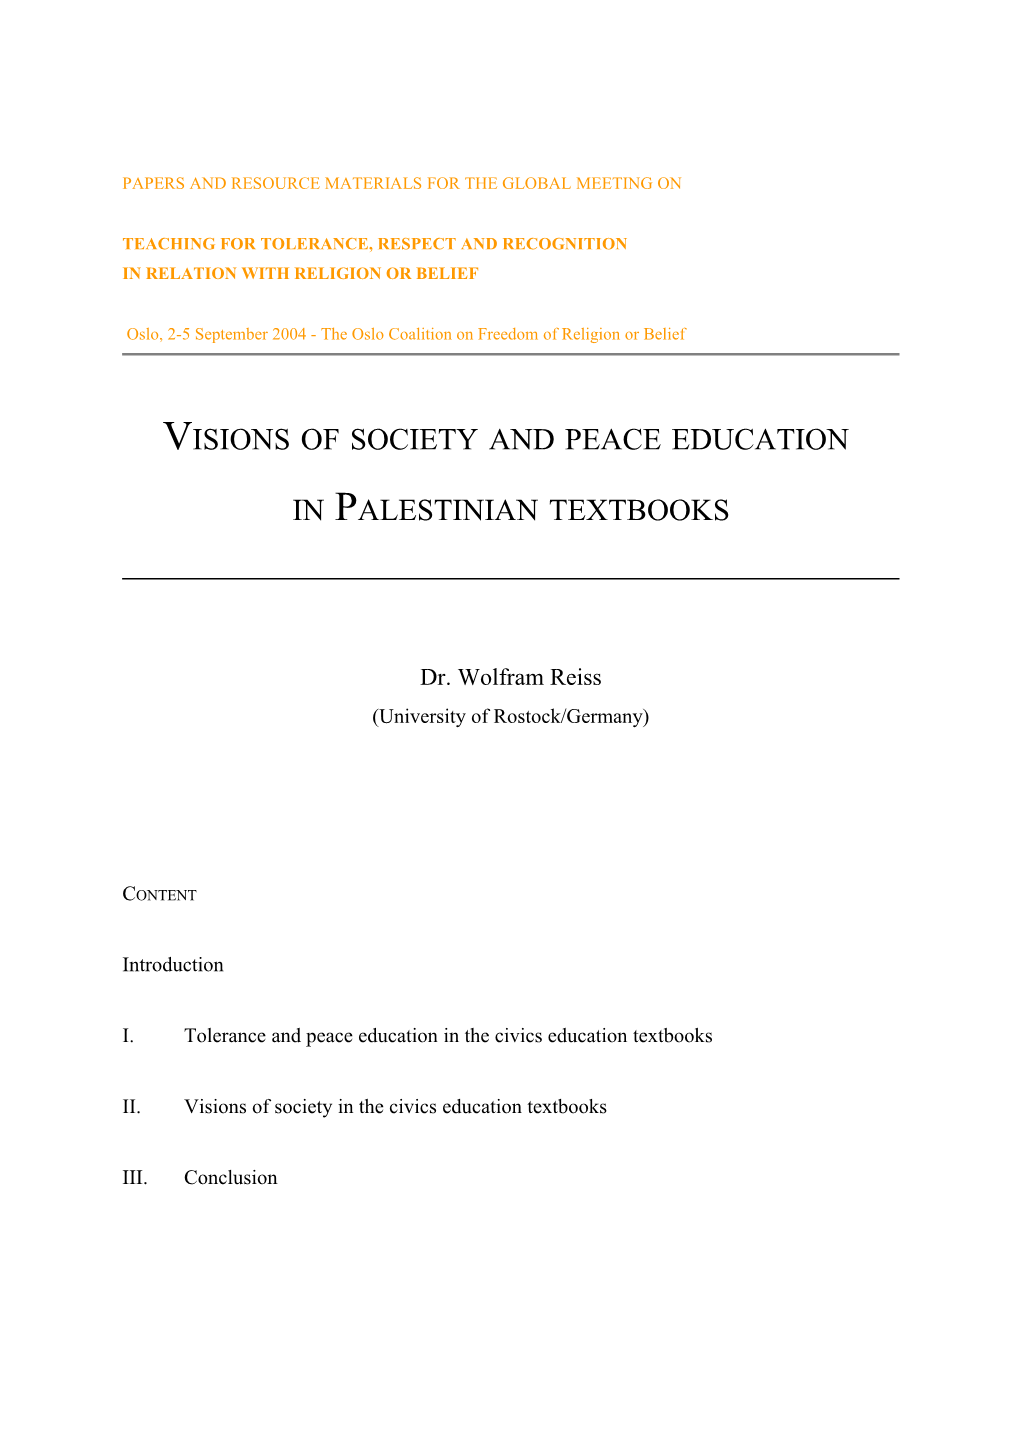 Die Palästinensischen Schulbücher Für Das Fach Islamische Religion